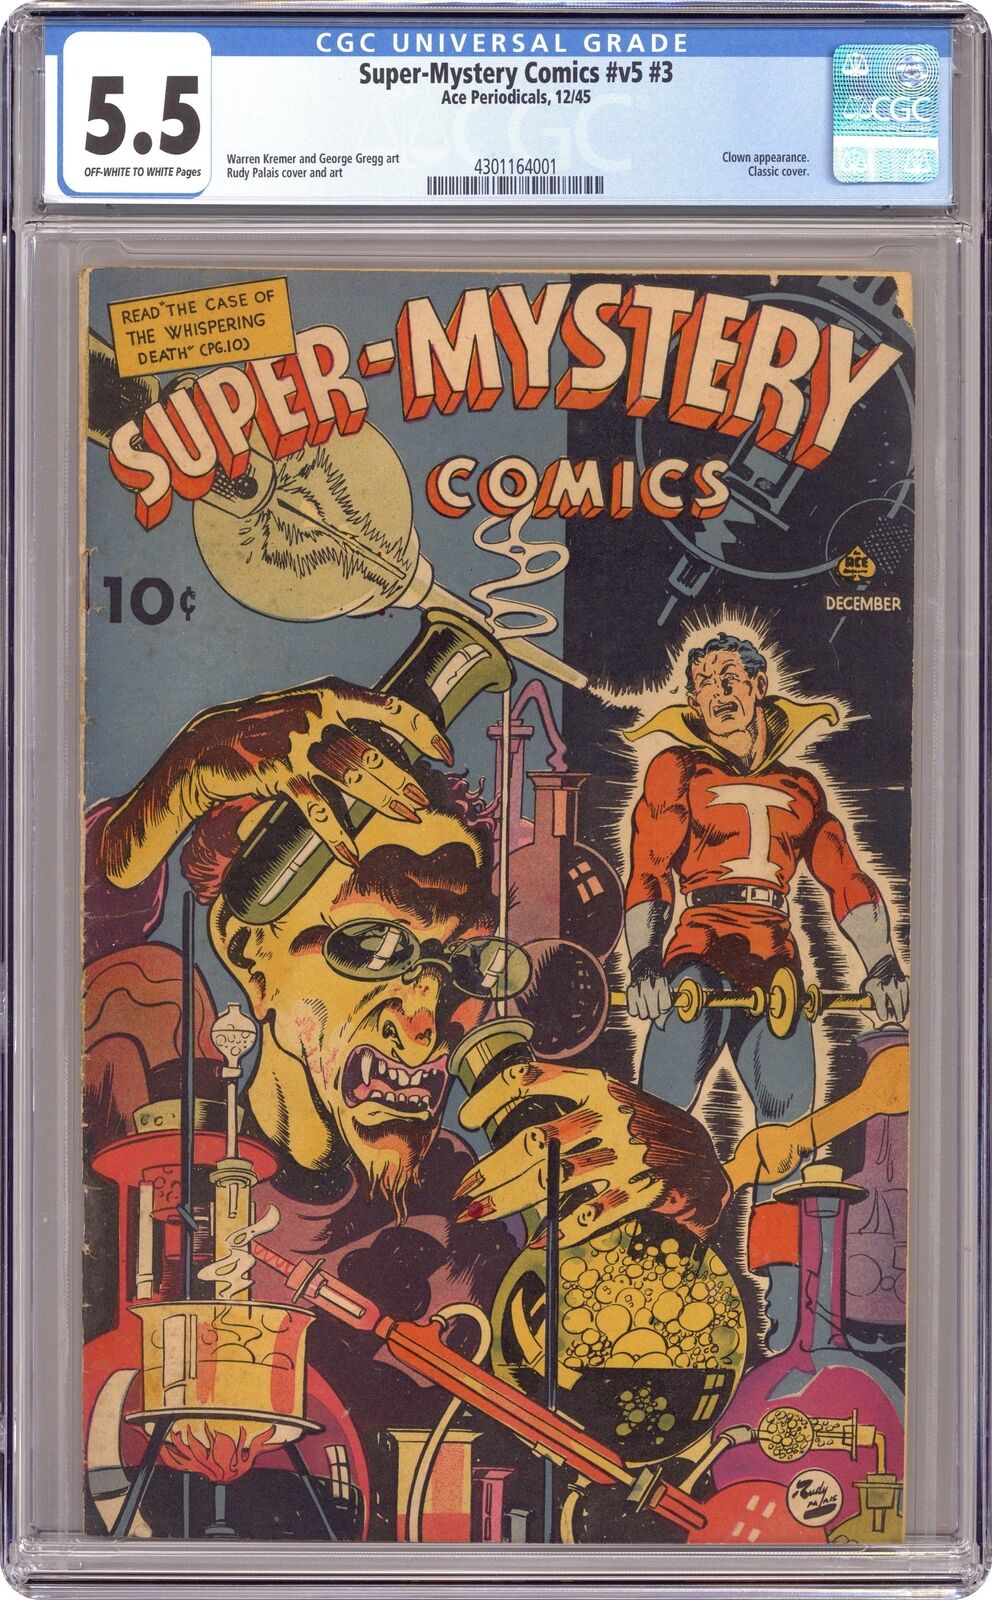 Super Mystery Comics Vol. 5 #3 CGC 5.5 1945 4301164001